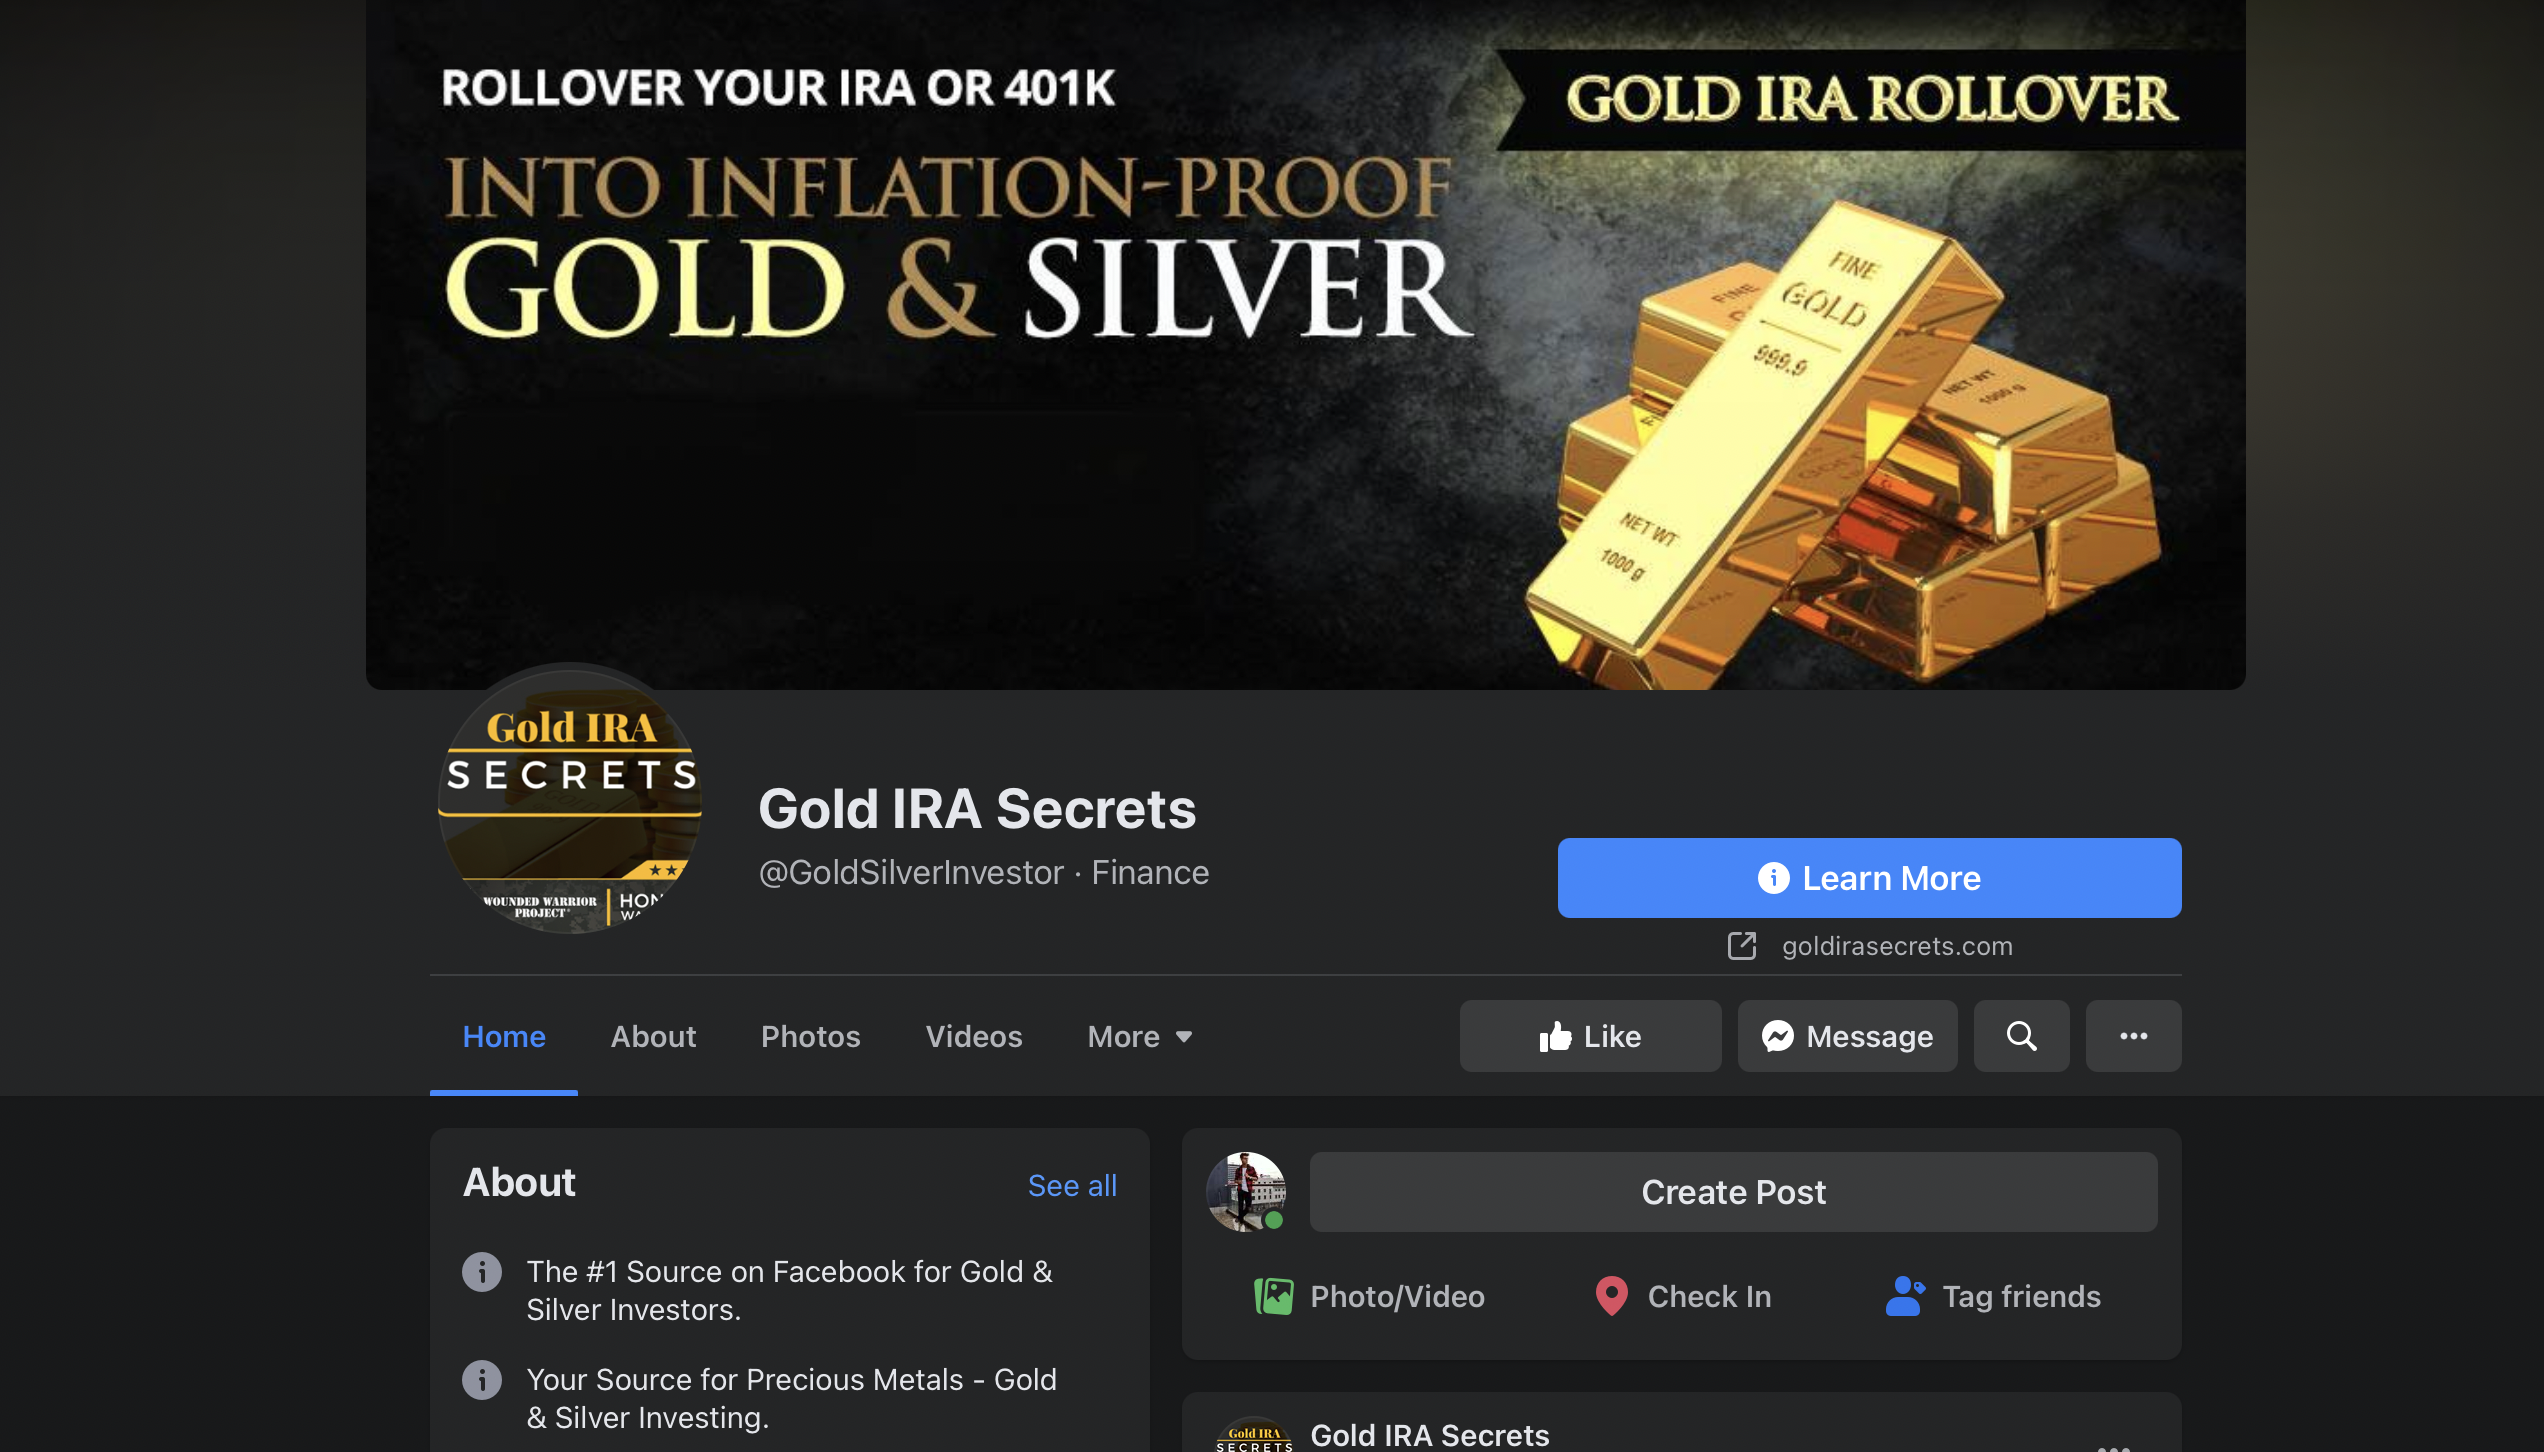 Gold IRA Secrets FB group